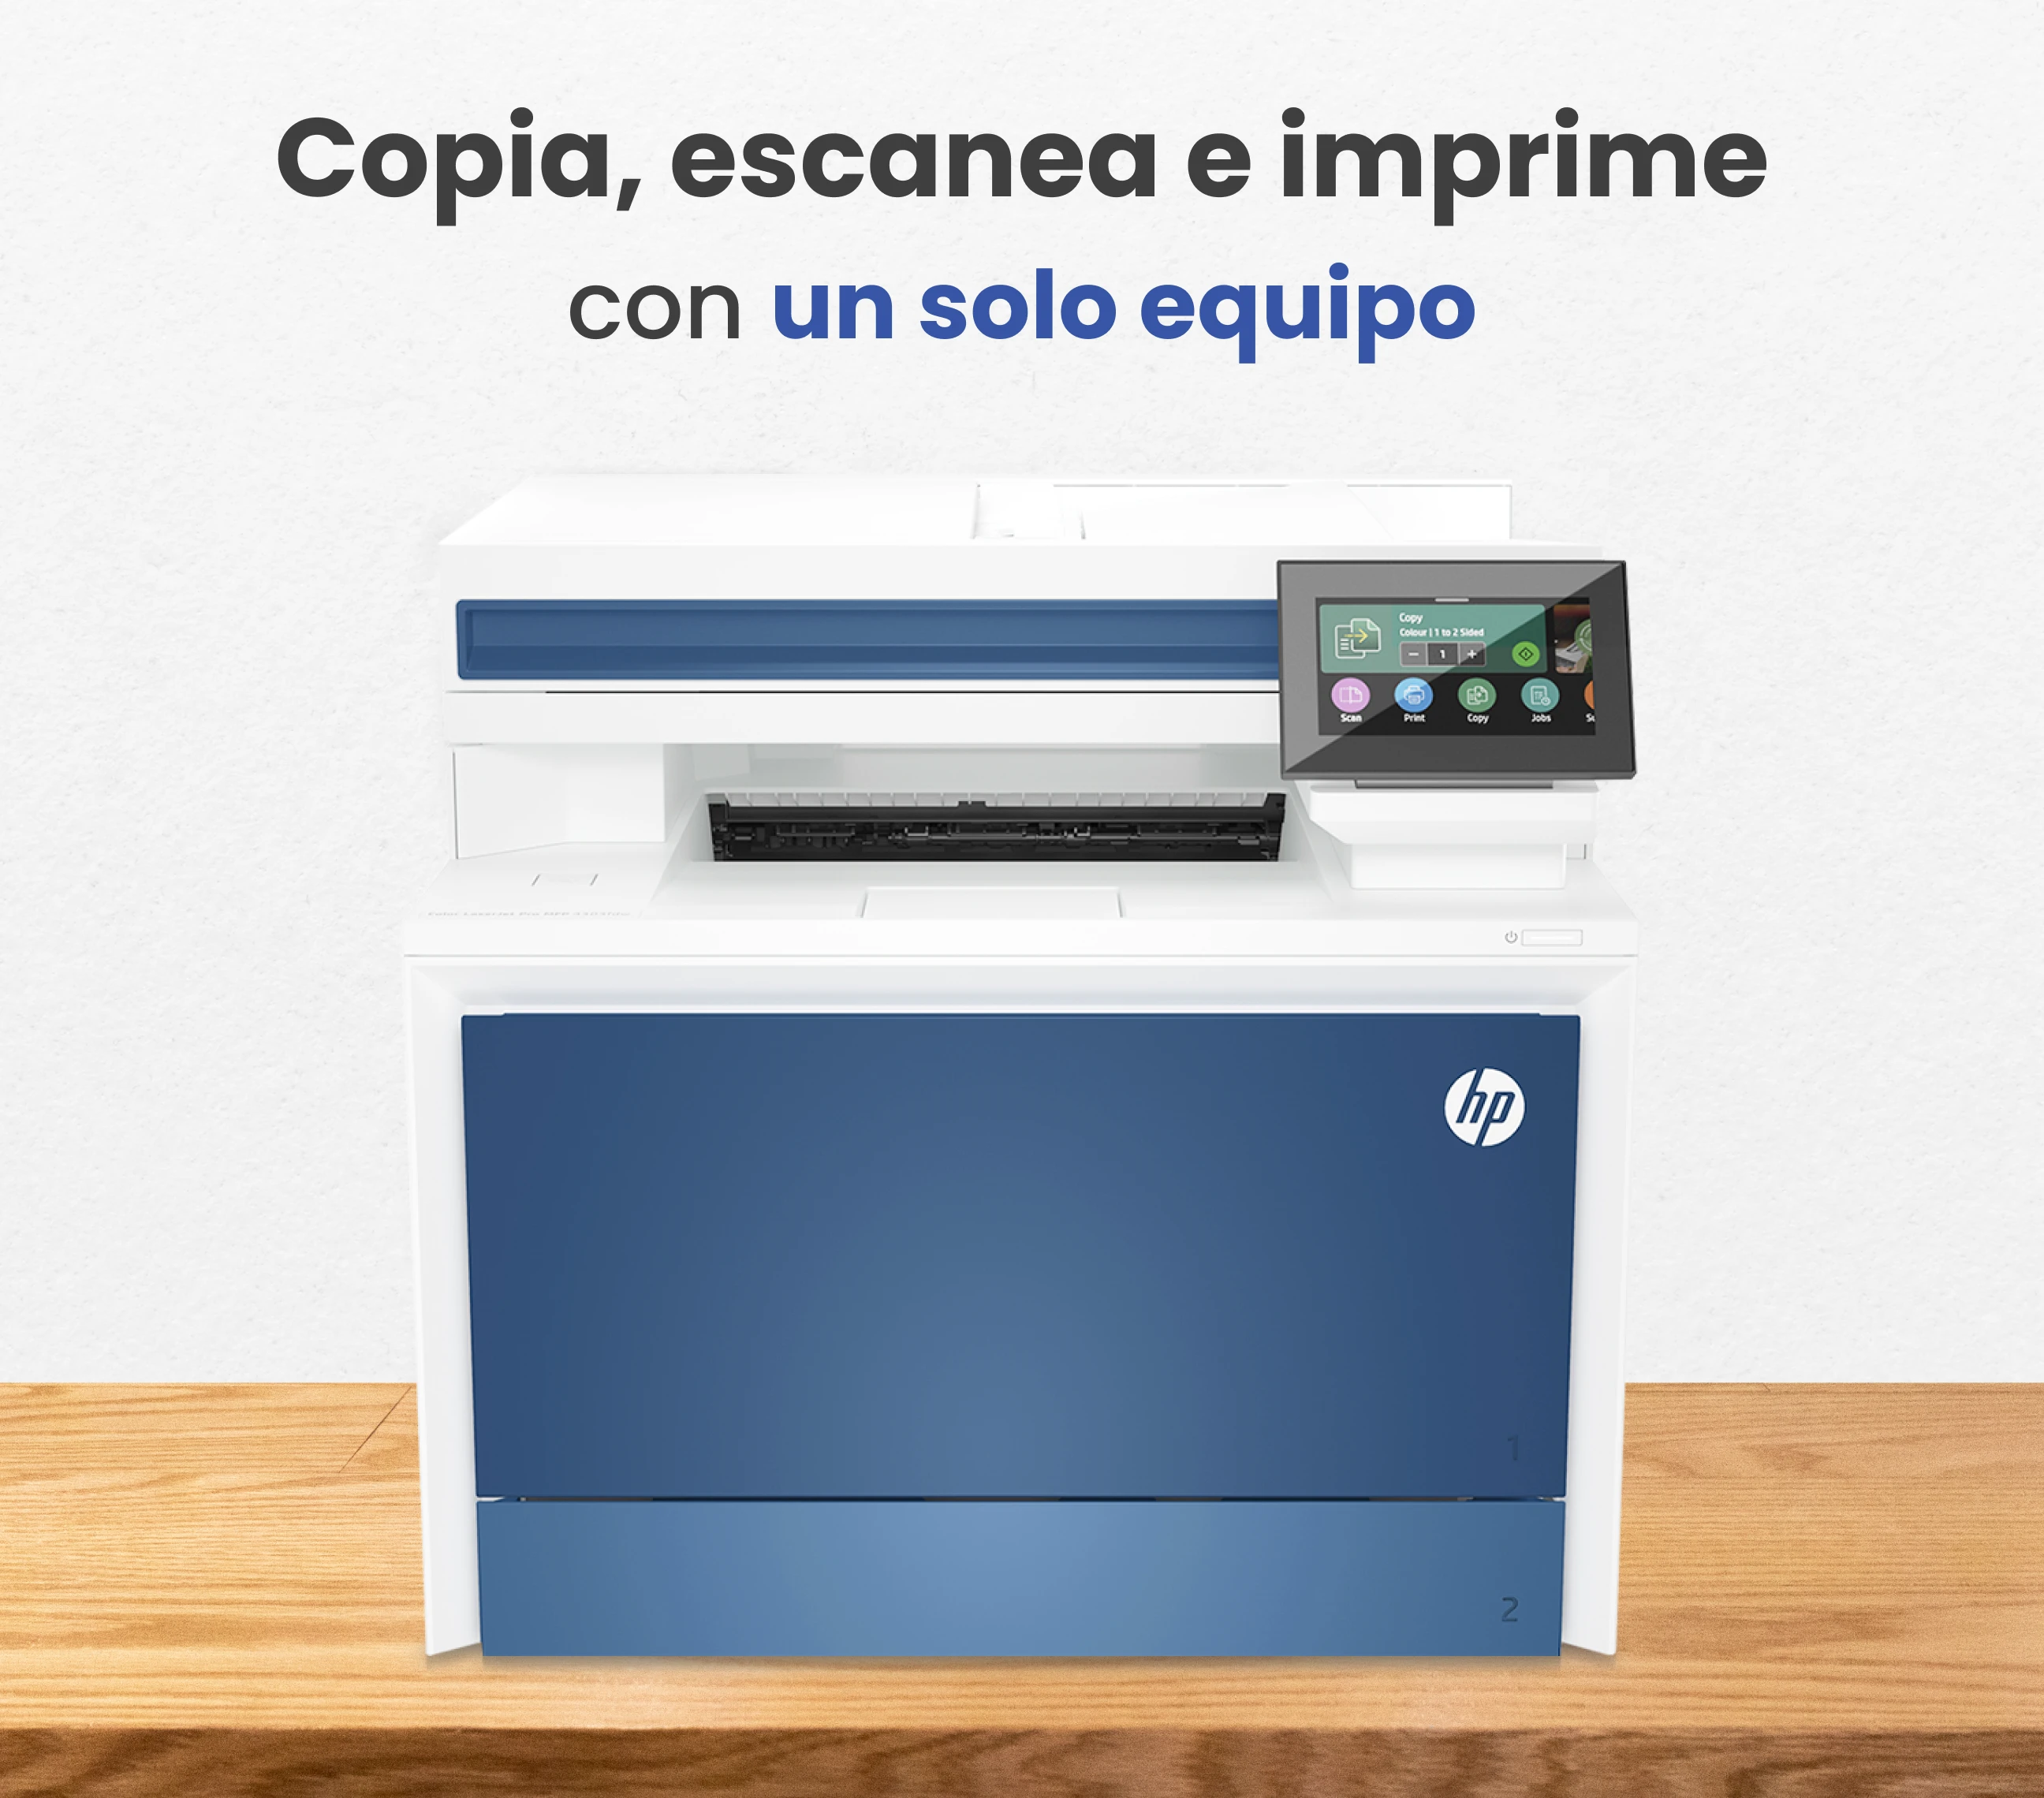 Copia, escanea e imprime con un solo equipo con HP